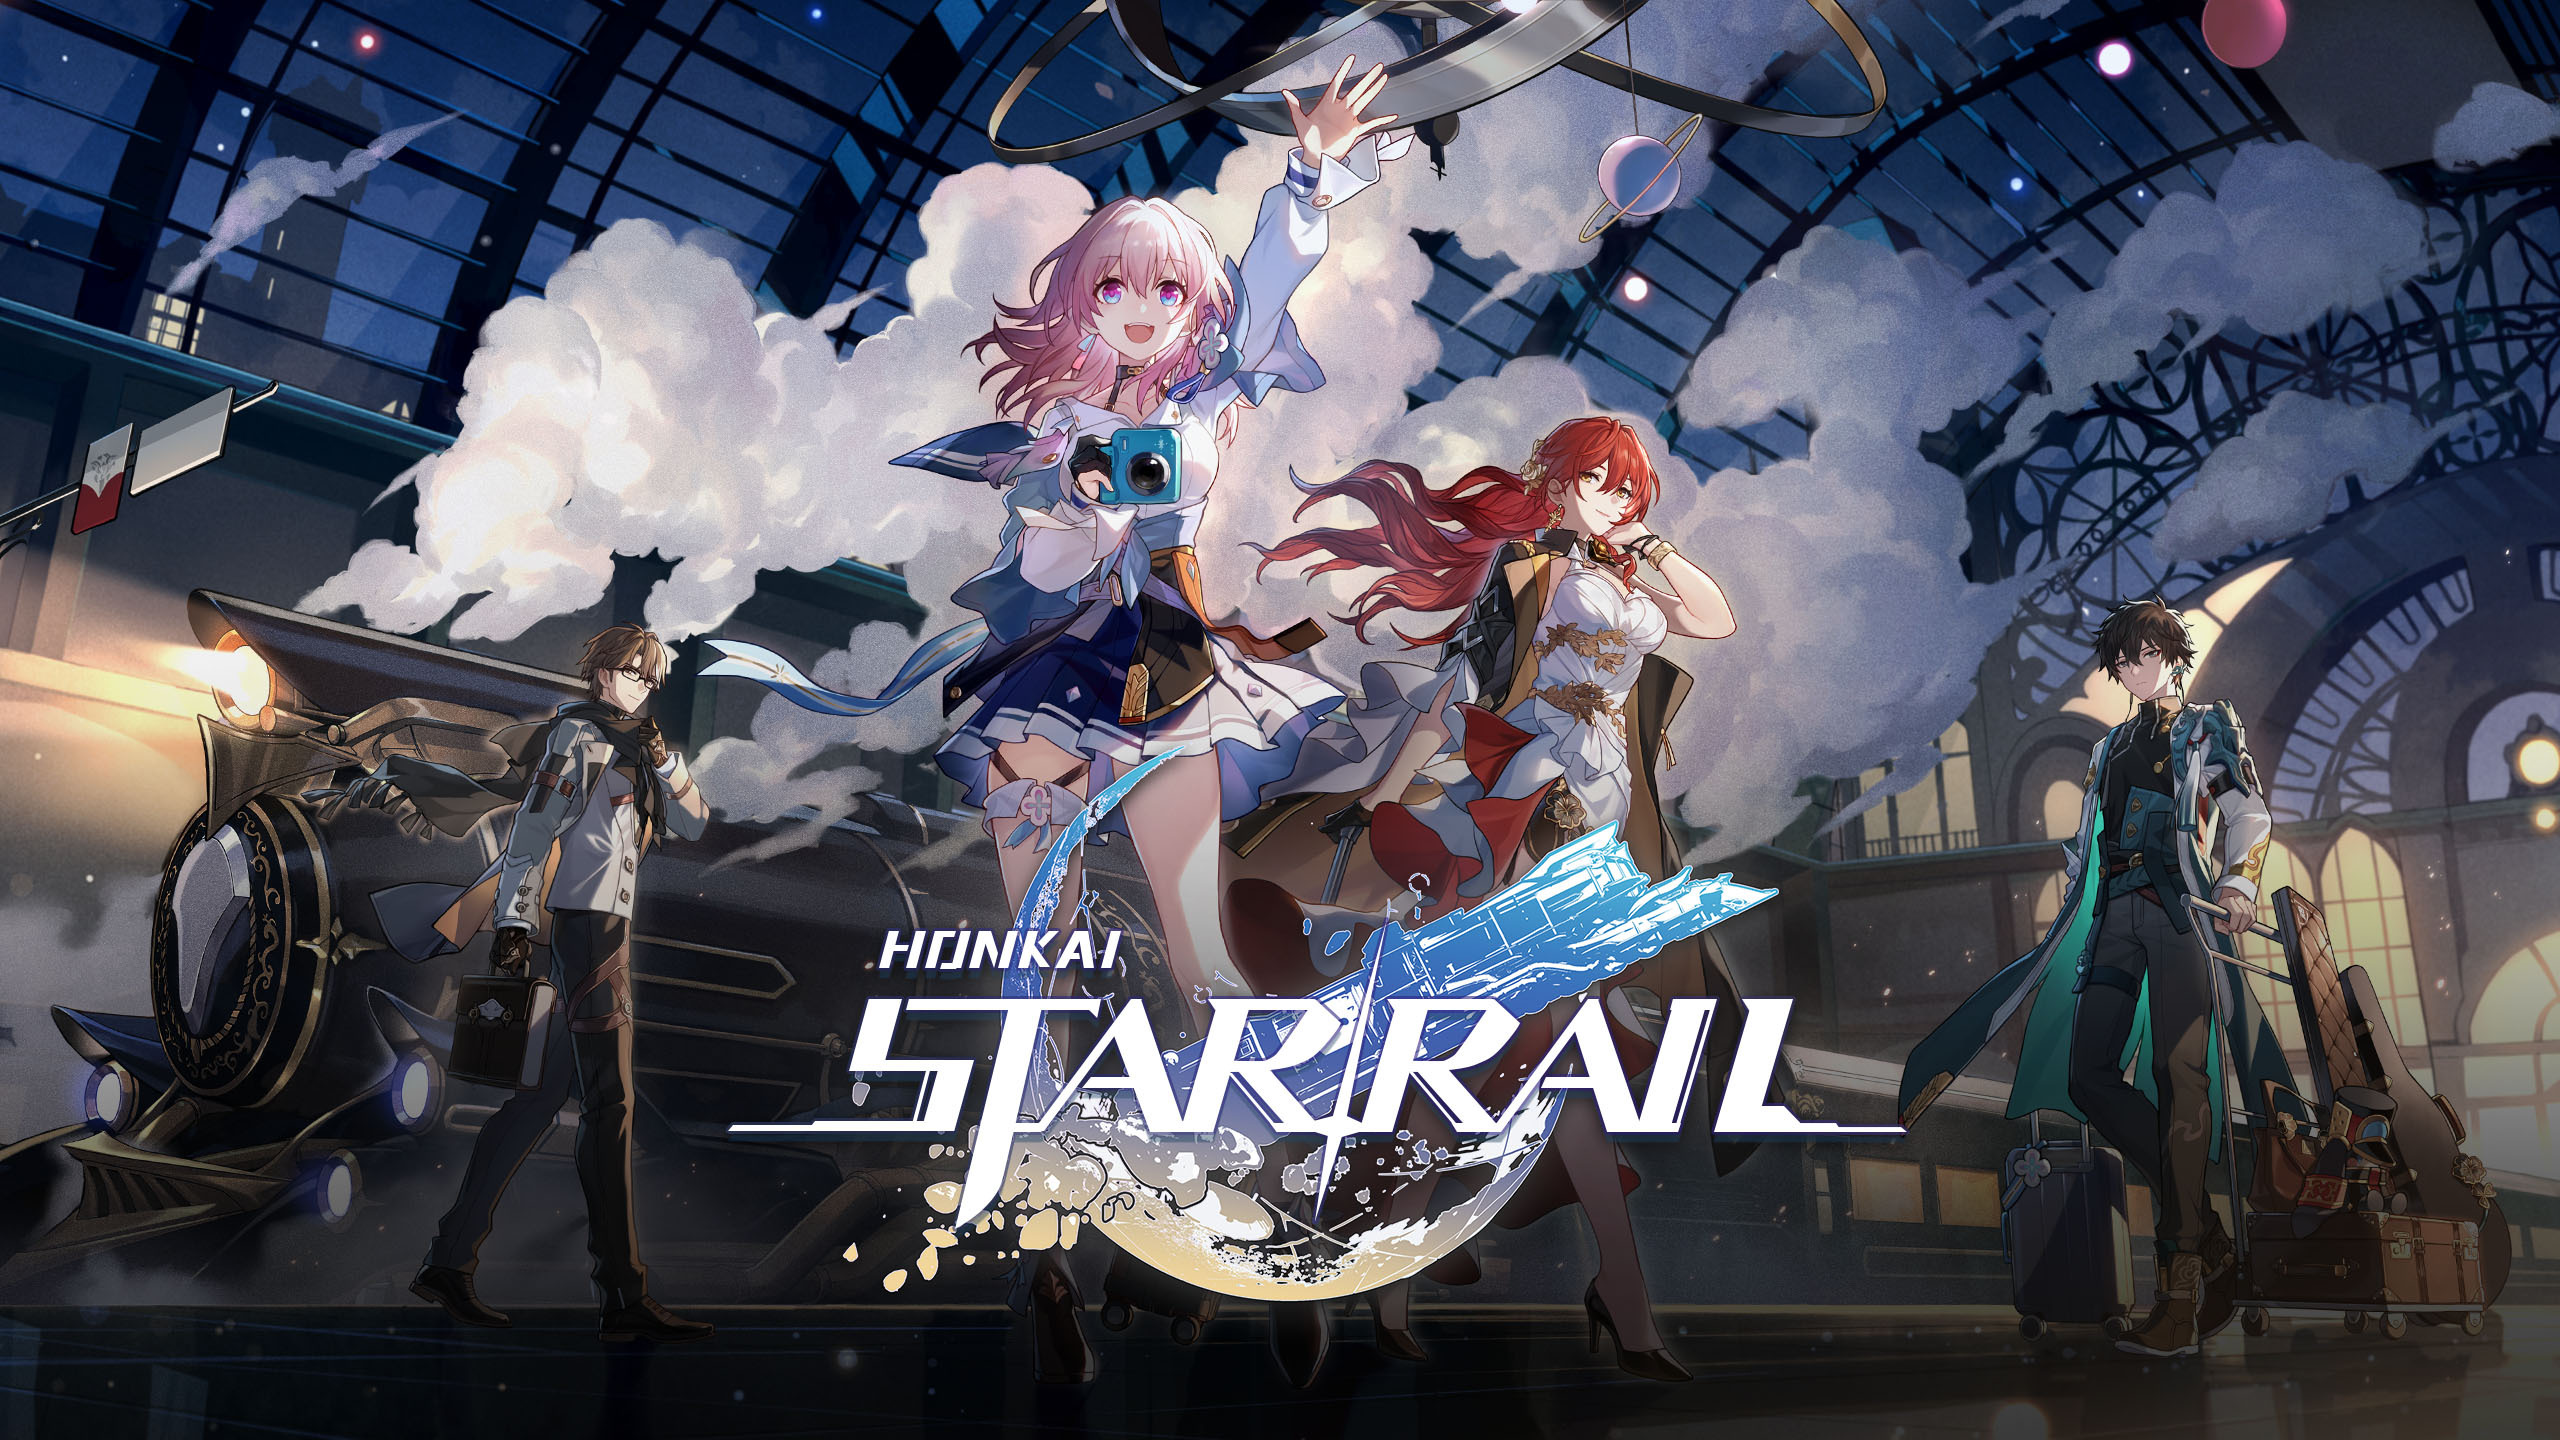 Den 8 juli lovar miHoYo Games att avslöja mer information om uppdateringen "Even Immortality Ends" 1.2 för Honkai: Star Rail